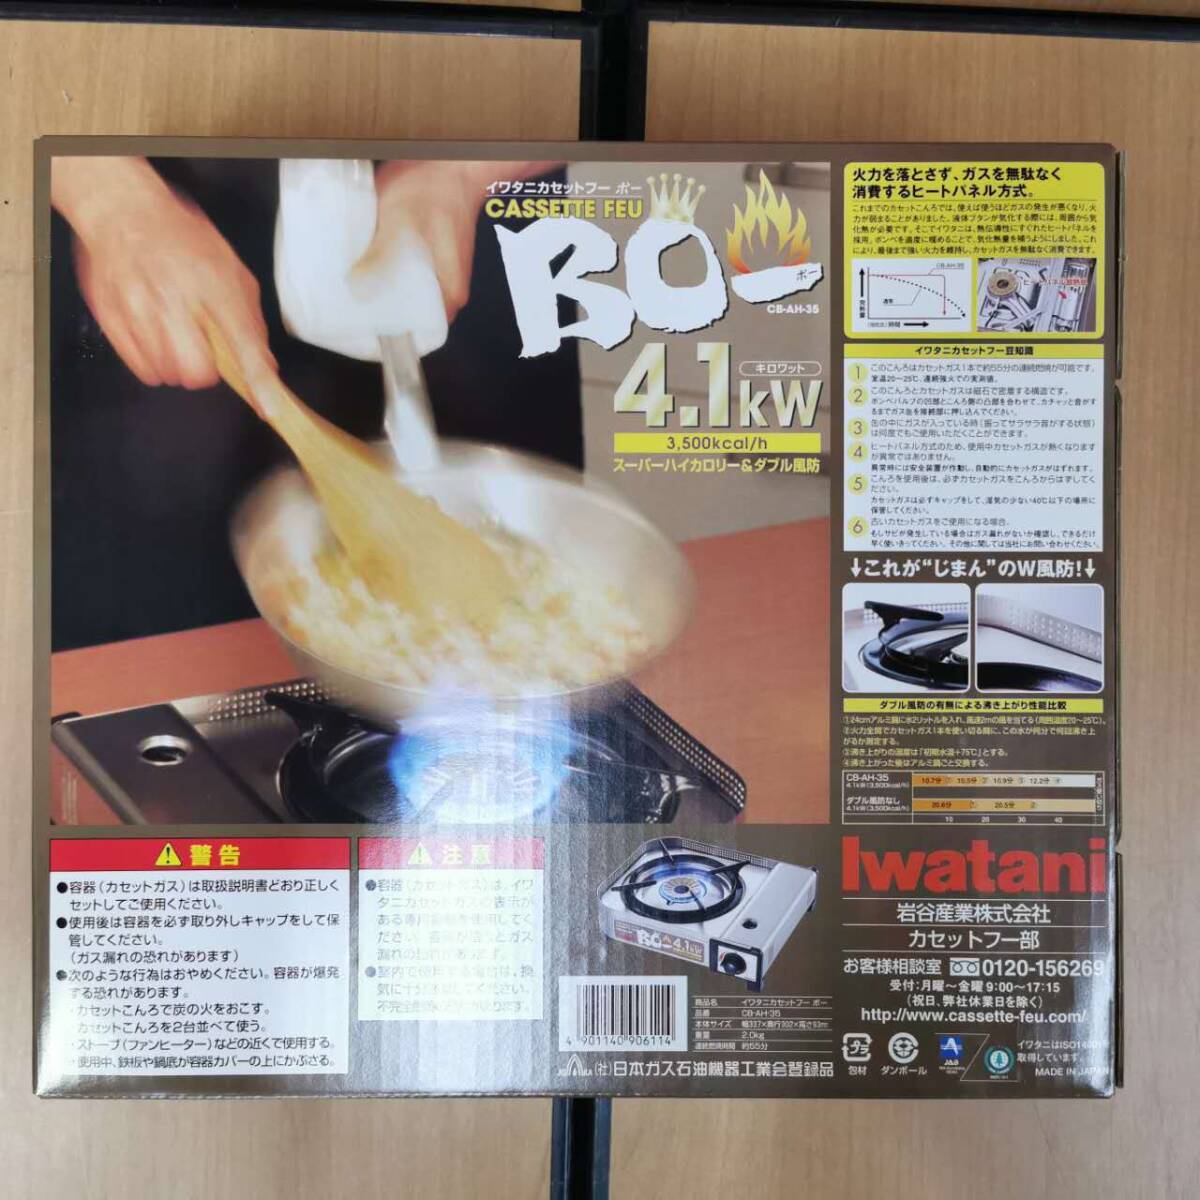 [ не использовался товар ]Iwatani Iwatani кассета f-BO-bo-[CB-AH-35] настольная плитка 4.1kW размер примерно ( высота 9.3× ширина 33.7× внутри 30.2cm)